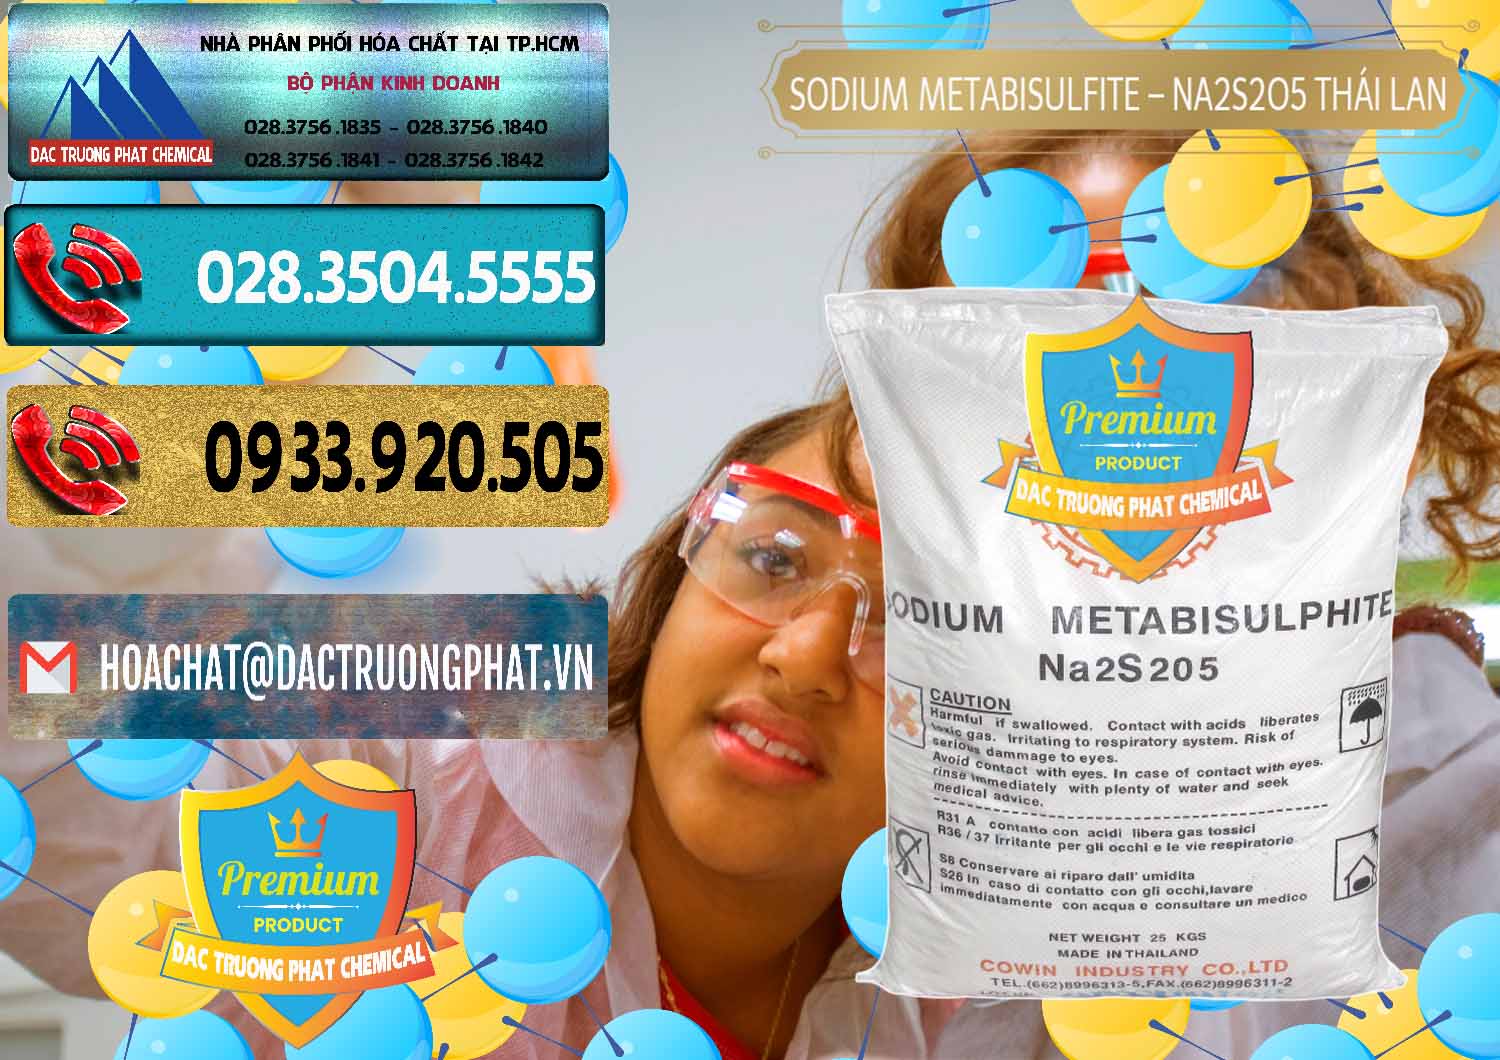 Công ty chuyên bán - phân phối Sodium Metabisulfite - NA2S2O5 Thái Lan Cowin - 0145 - Đơn vị cung cấp & bán hóa chất tại TP.HCM - hoachatdetnhuom.com